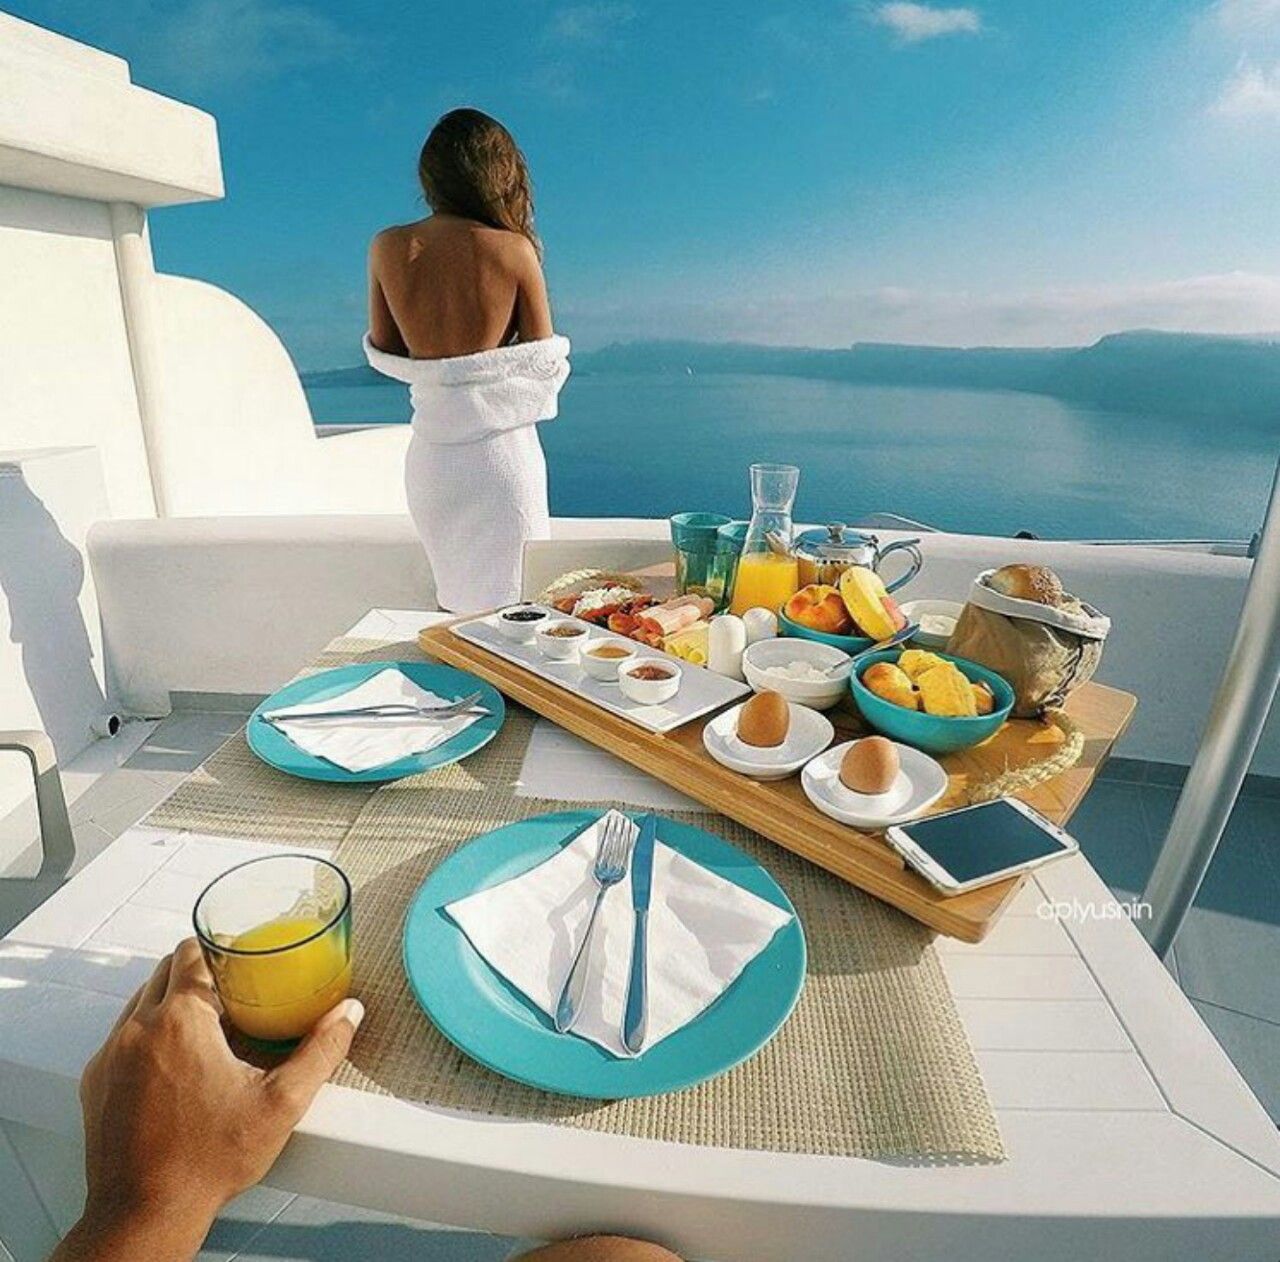 Удовольствие с утра. Утро на Санторини. Завтрак с видом на море. Атрибуты красивой жизни. Шикарный завтрак.